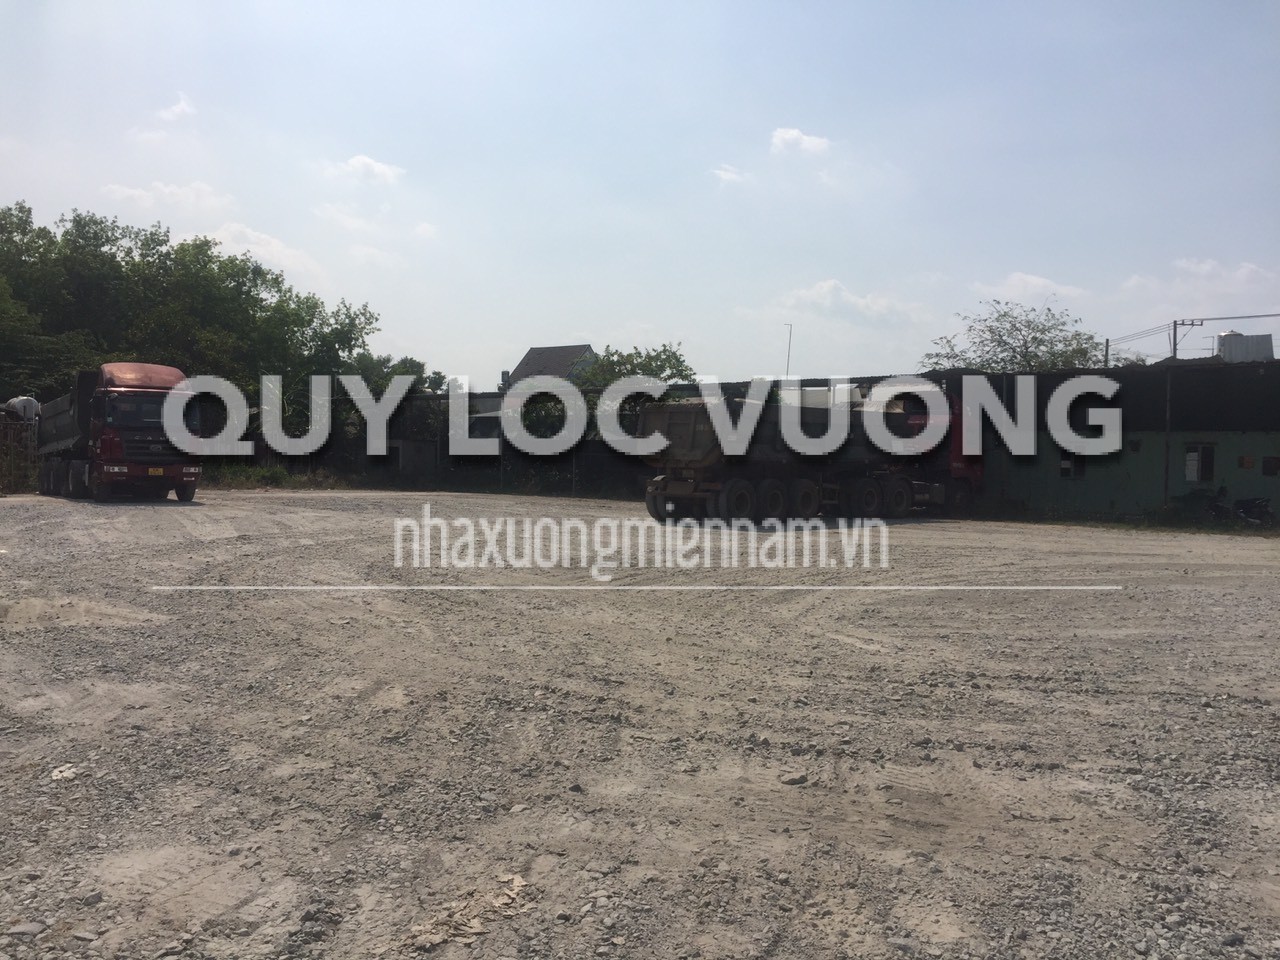 Cho thuê bãi đậu xe 4.000m2 ở Hòa Lợi, Bến Cát, Bình Dương - Quý Lộc Vượng - Công Ty TNHH MTV Quý Lộc Vượng